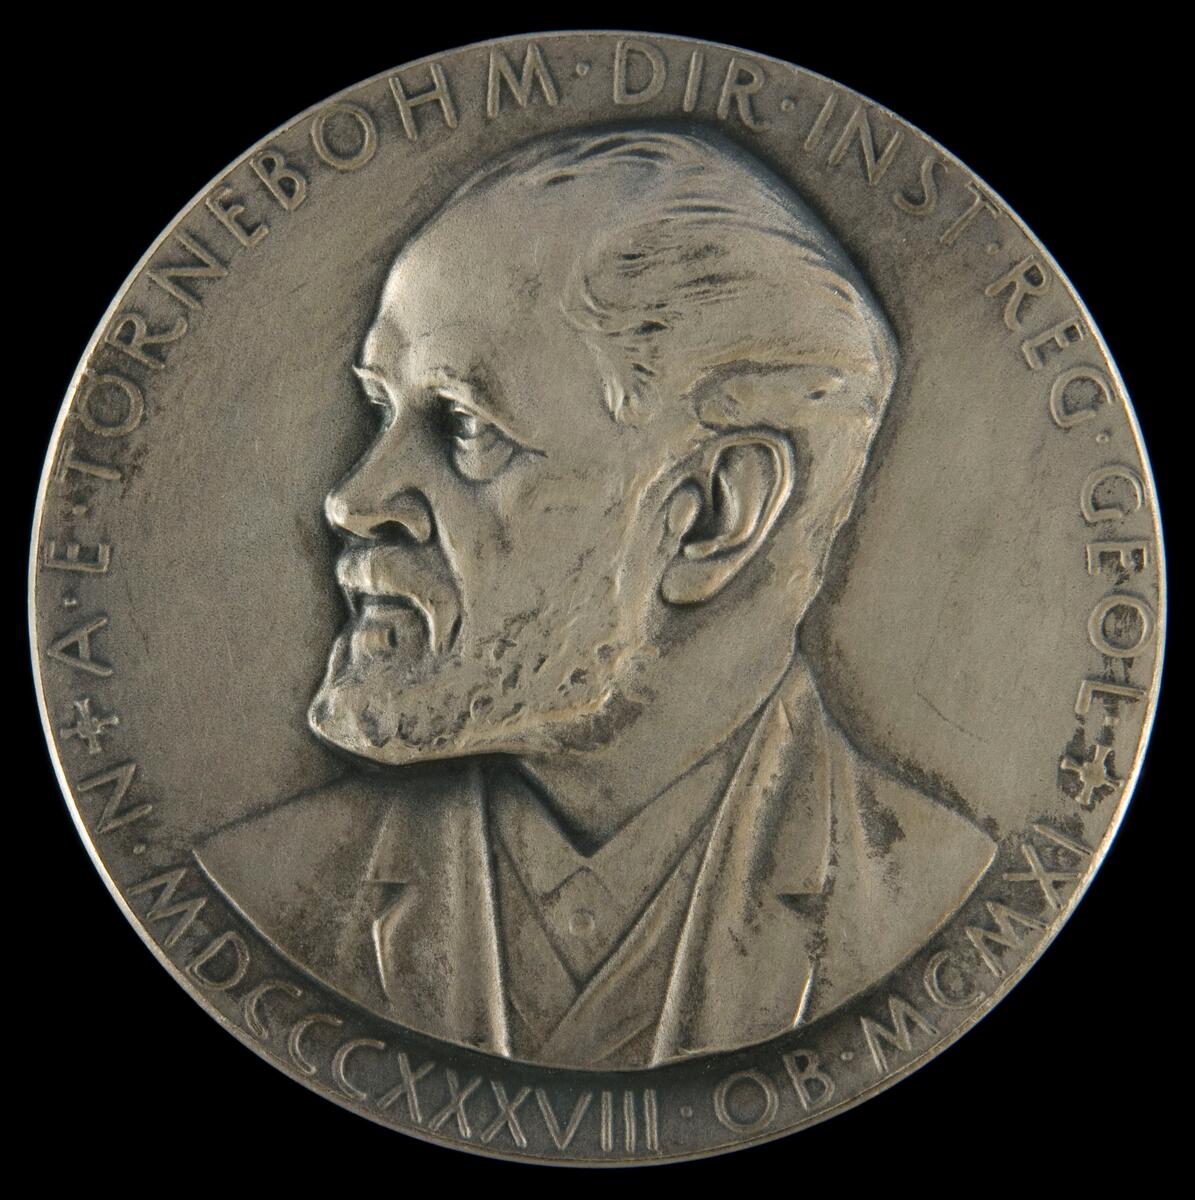 Medalj Alfred Elis Törnebohm. Vetenskapsakademin. Härnösands Allmänna Läroverk

